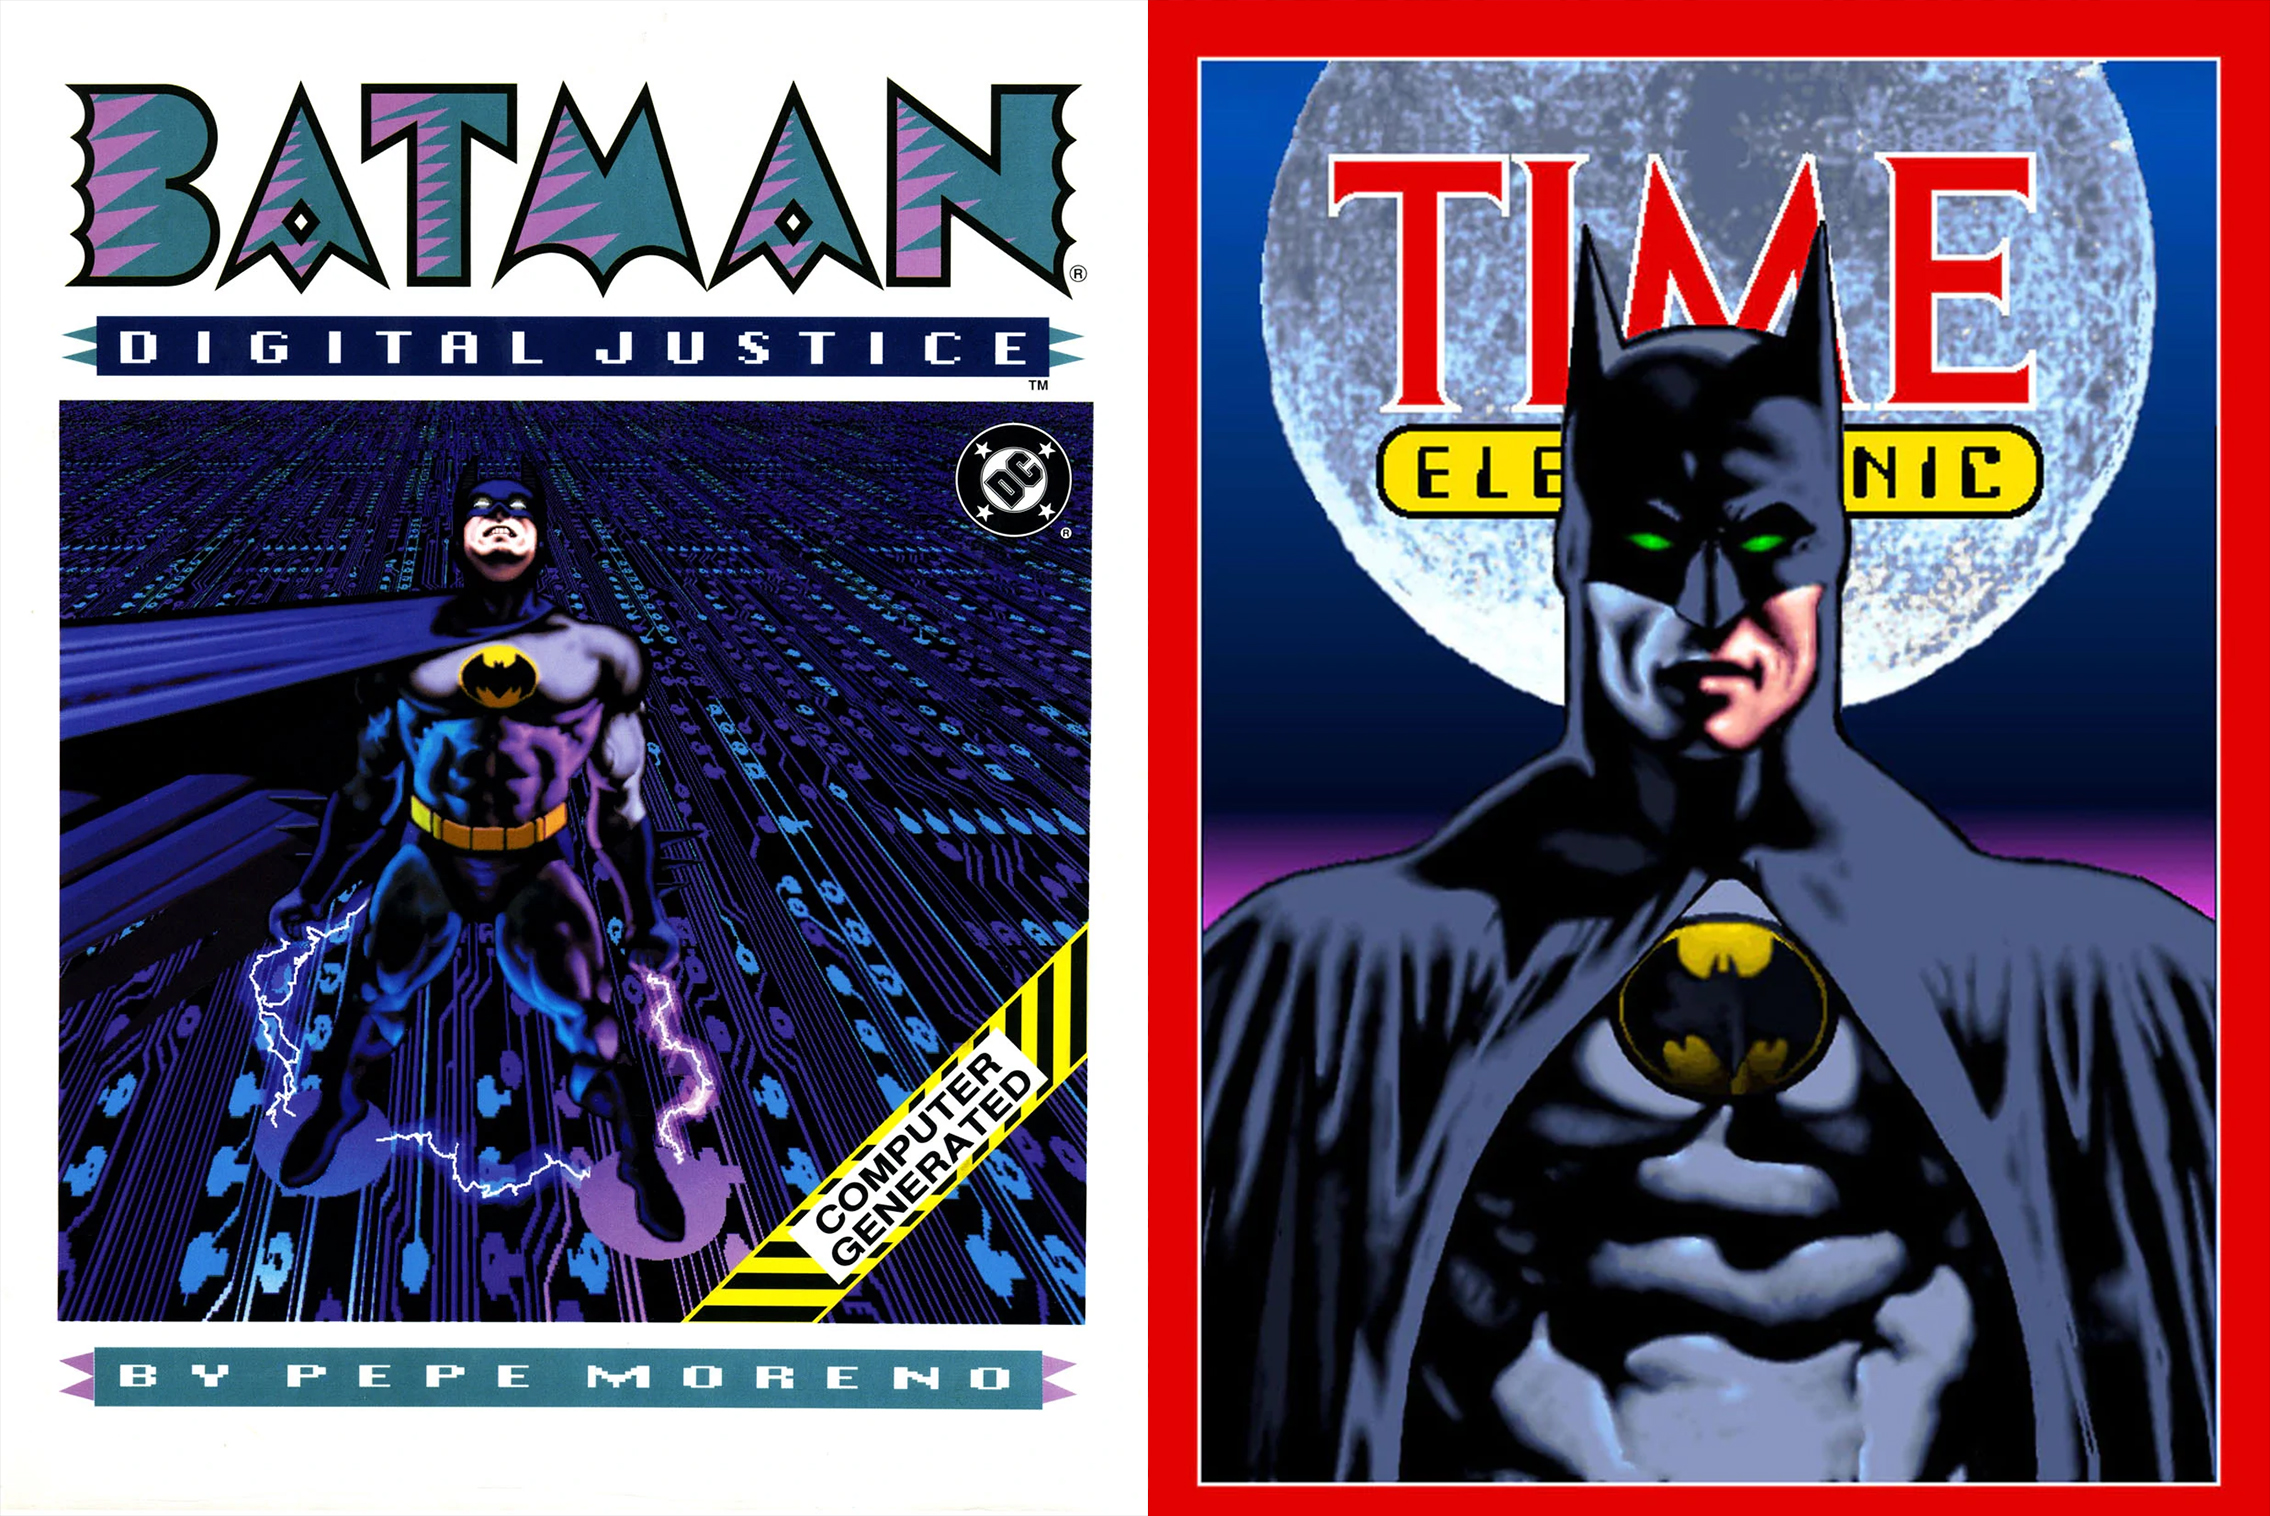 Batman Digital Justice graphic novel